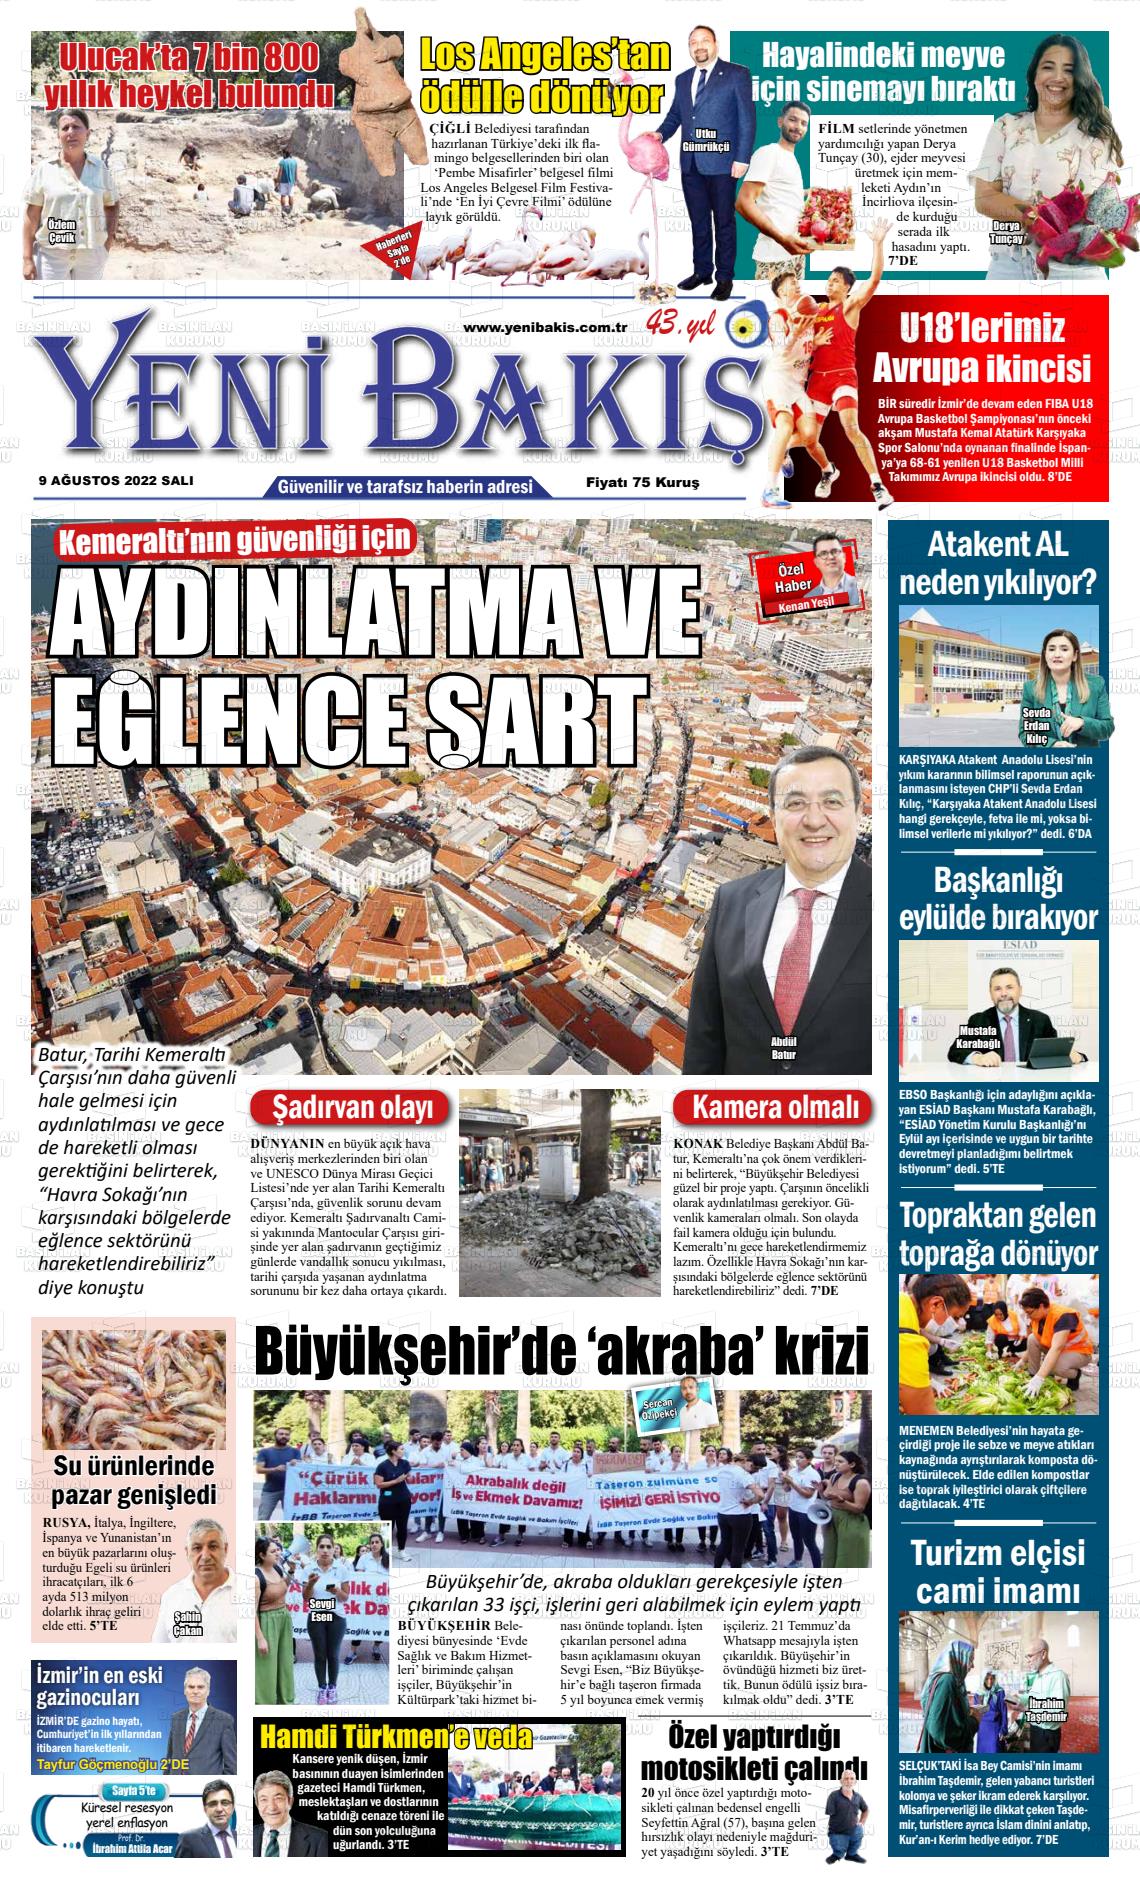 09 Ağustos 2022 Yeni Bakış Gazete Manşeti